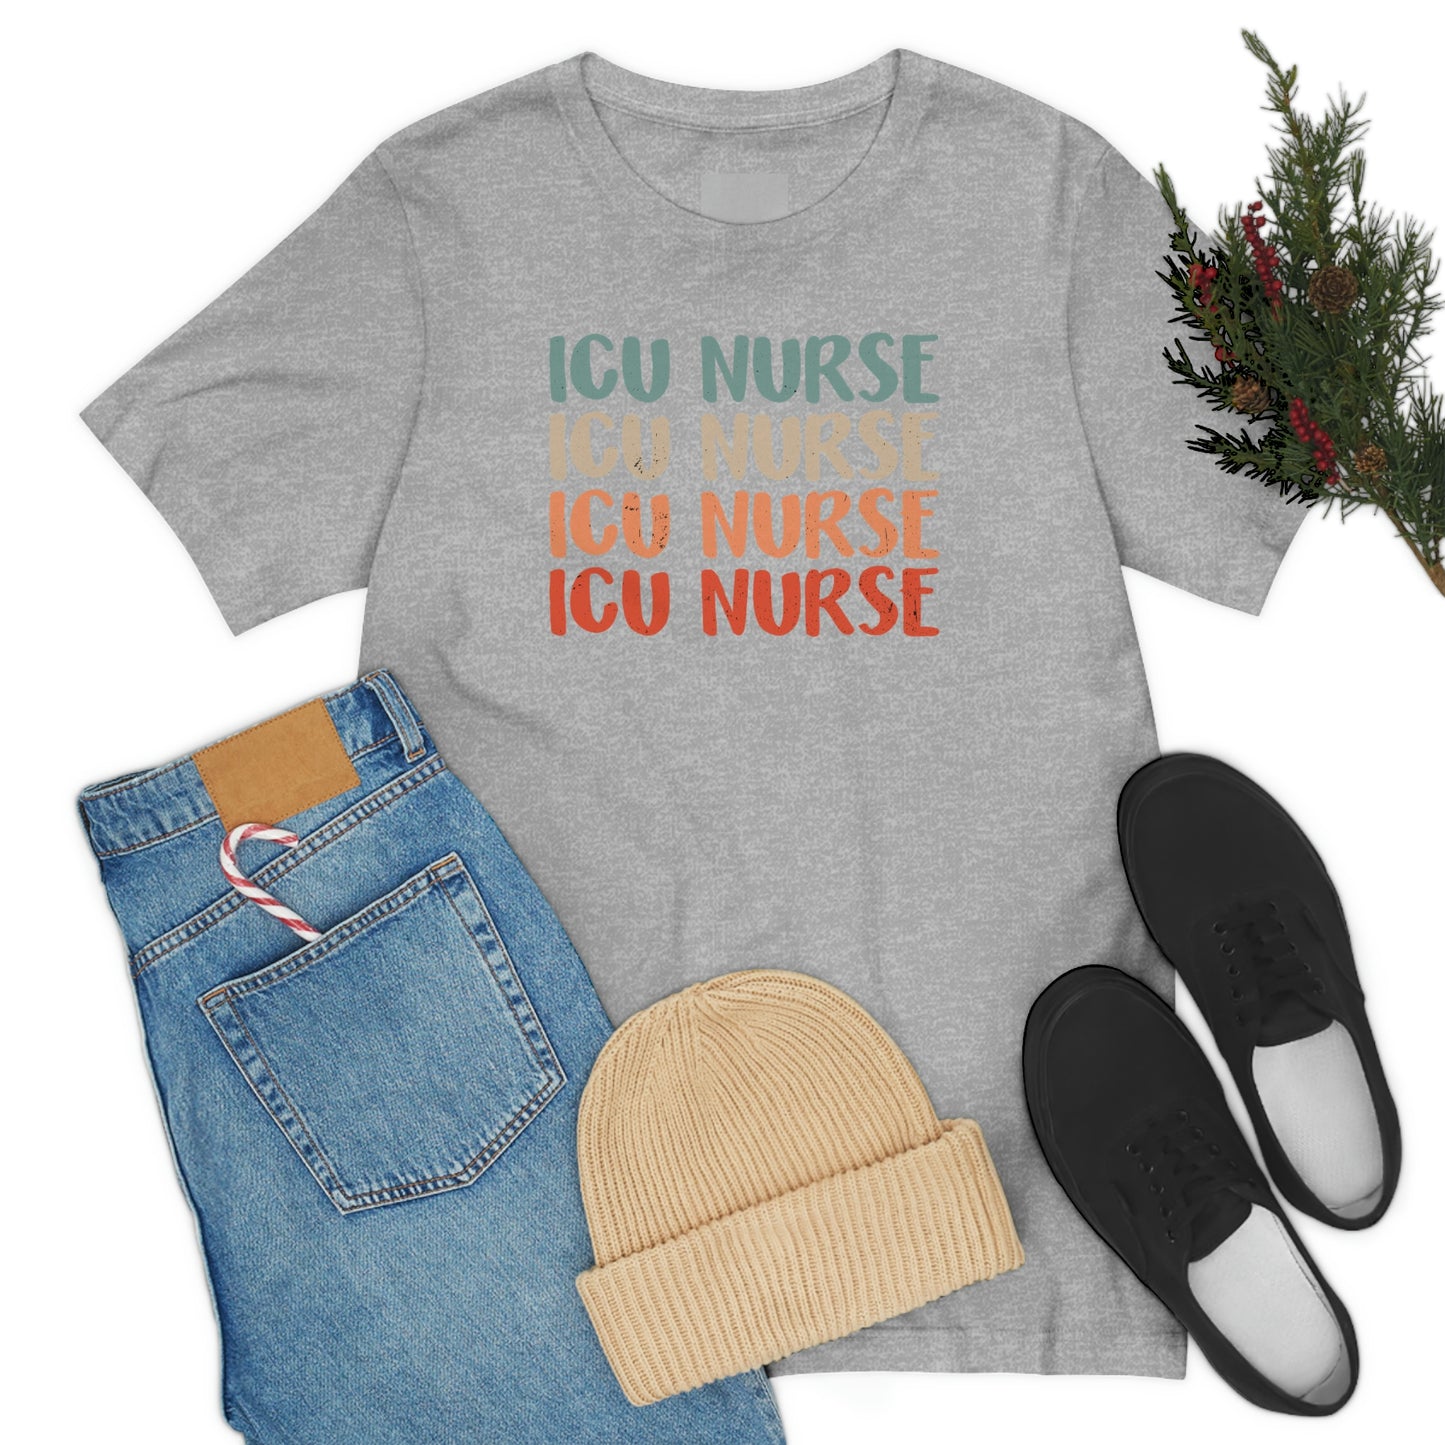 Intensive Care Unit Nurse Shirt, ICU Nurse Shirt, ICU Nurse Floral Shirt, Nurse Gift, Nurse Life Shirt, Future Nurse, Nurse Graduation Shirt